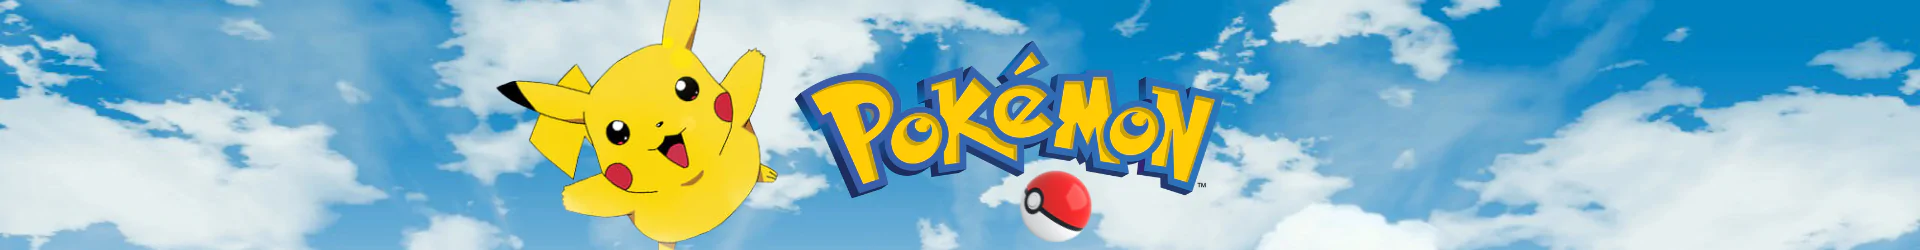 Pokemon mützen banner